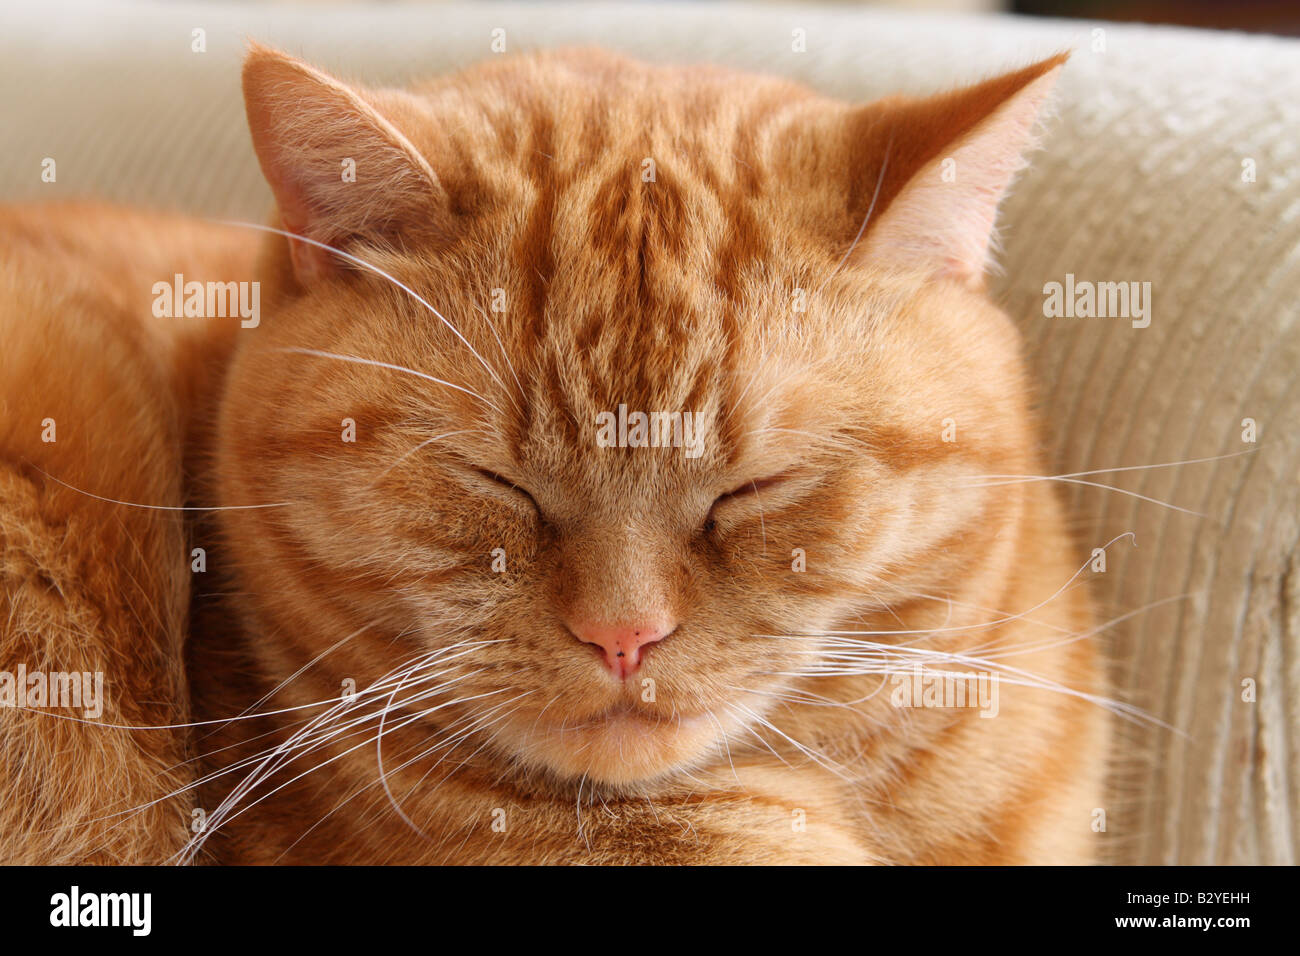 British shorthair ginger cat sleeping Stock Photo